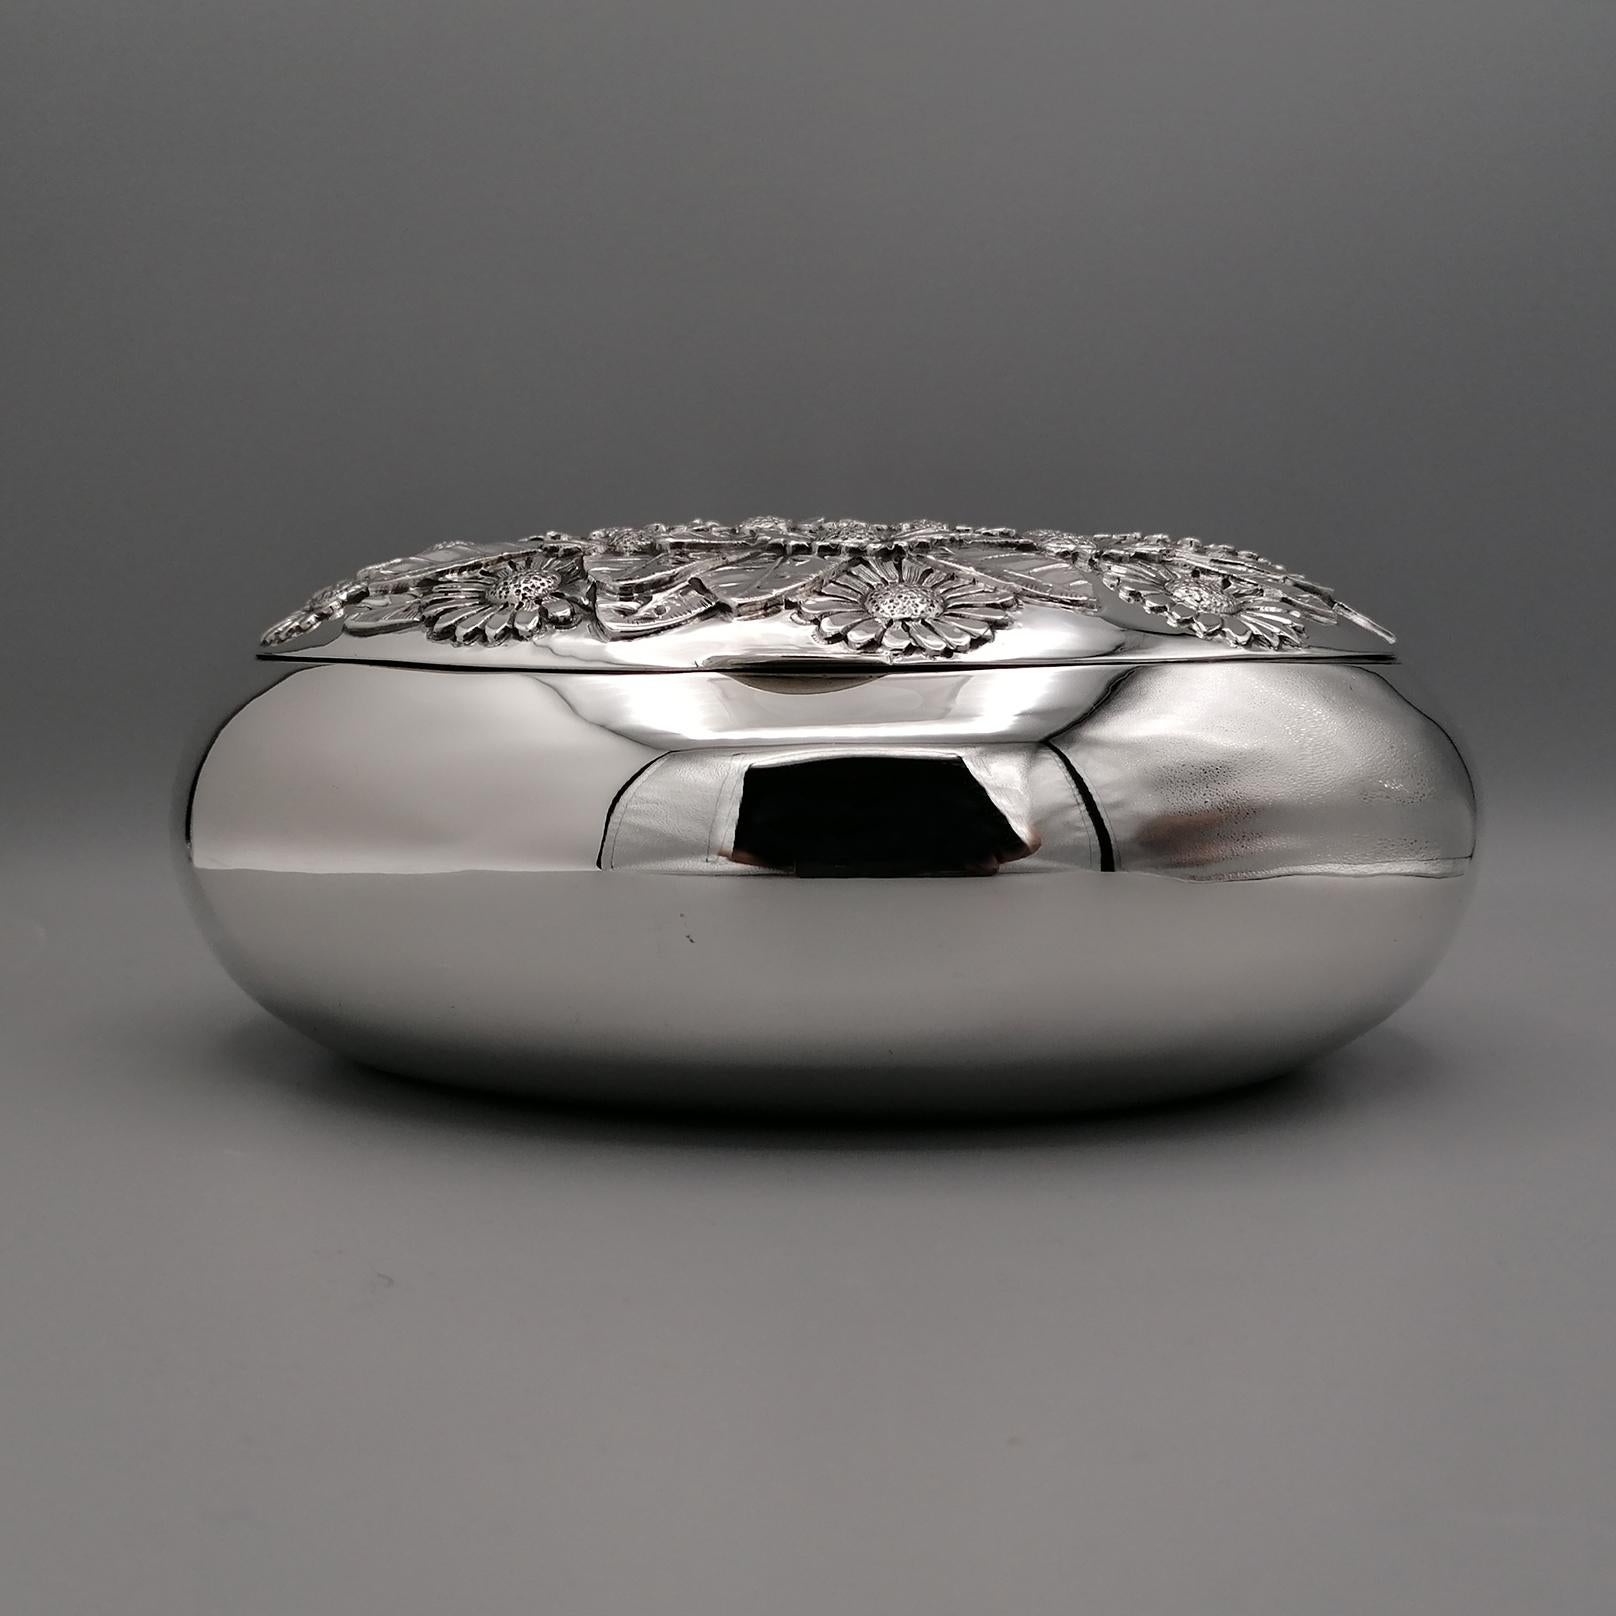 Contemporary 21° Century Italian 800 Solid Silver Decorative Box For Sale